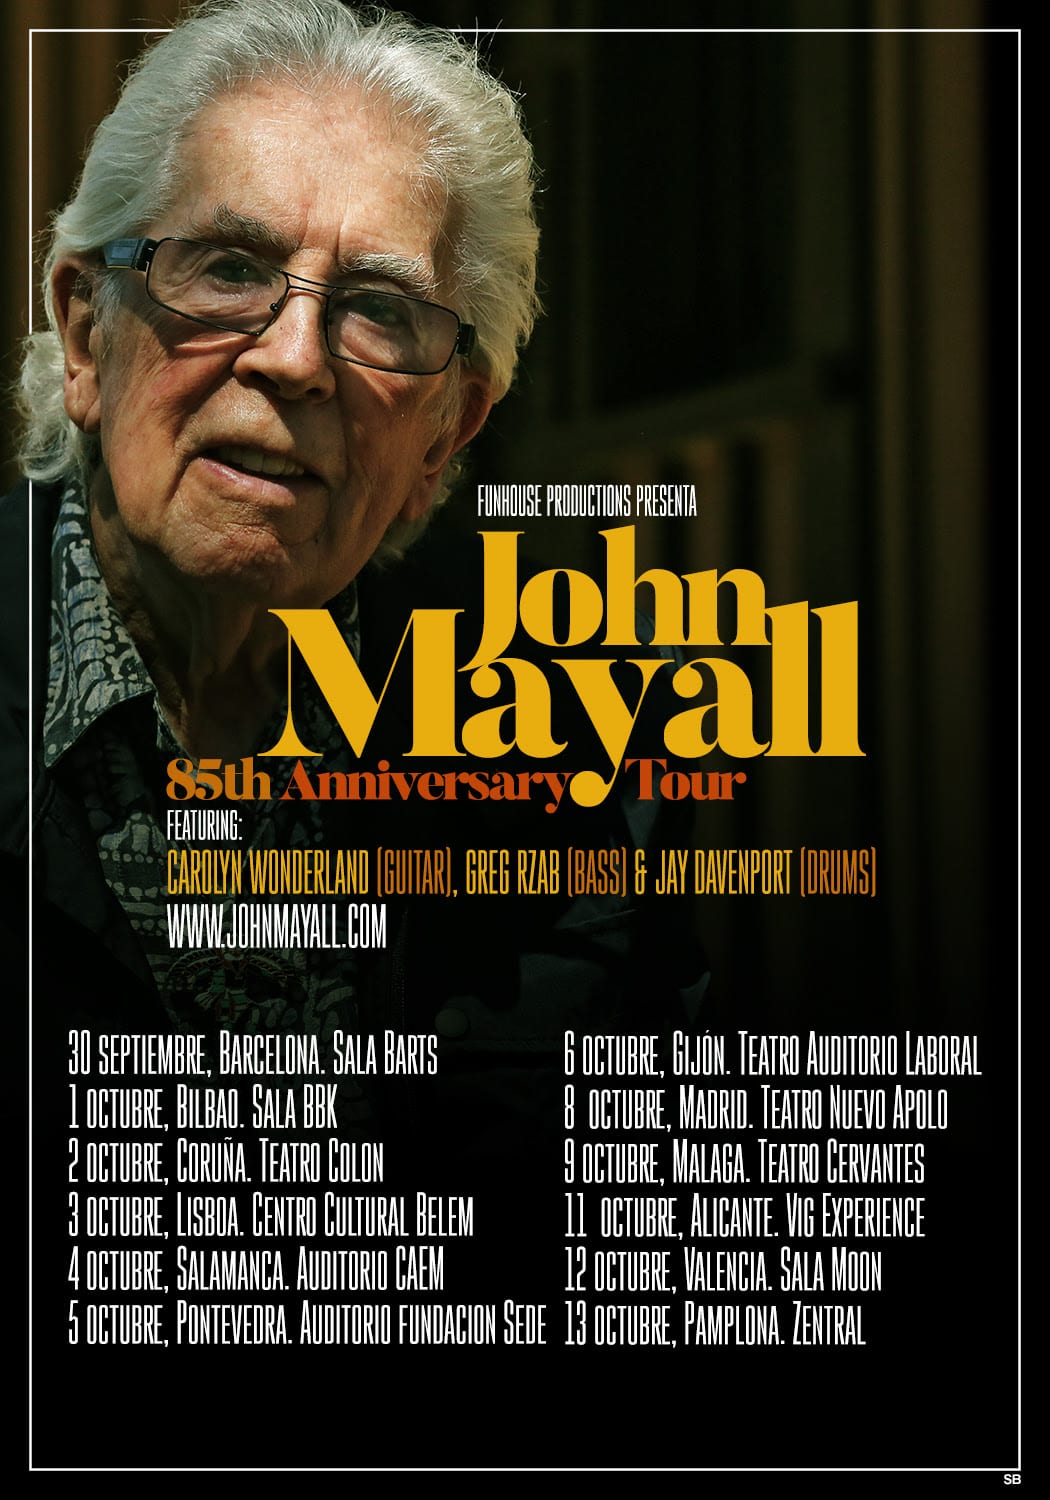 JOHN MAYALL anuncia nueva gira en España para otoño